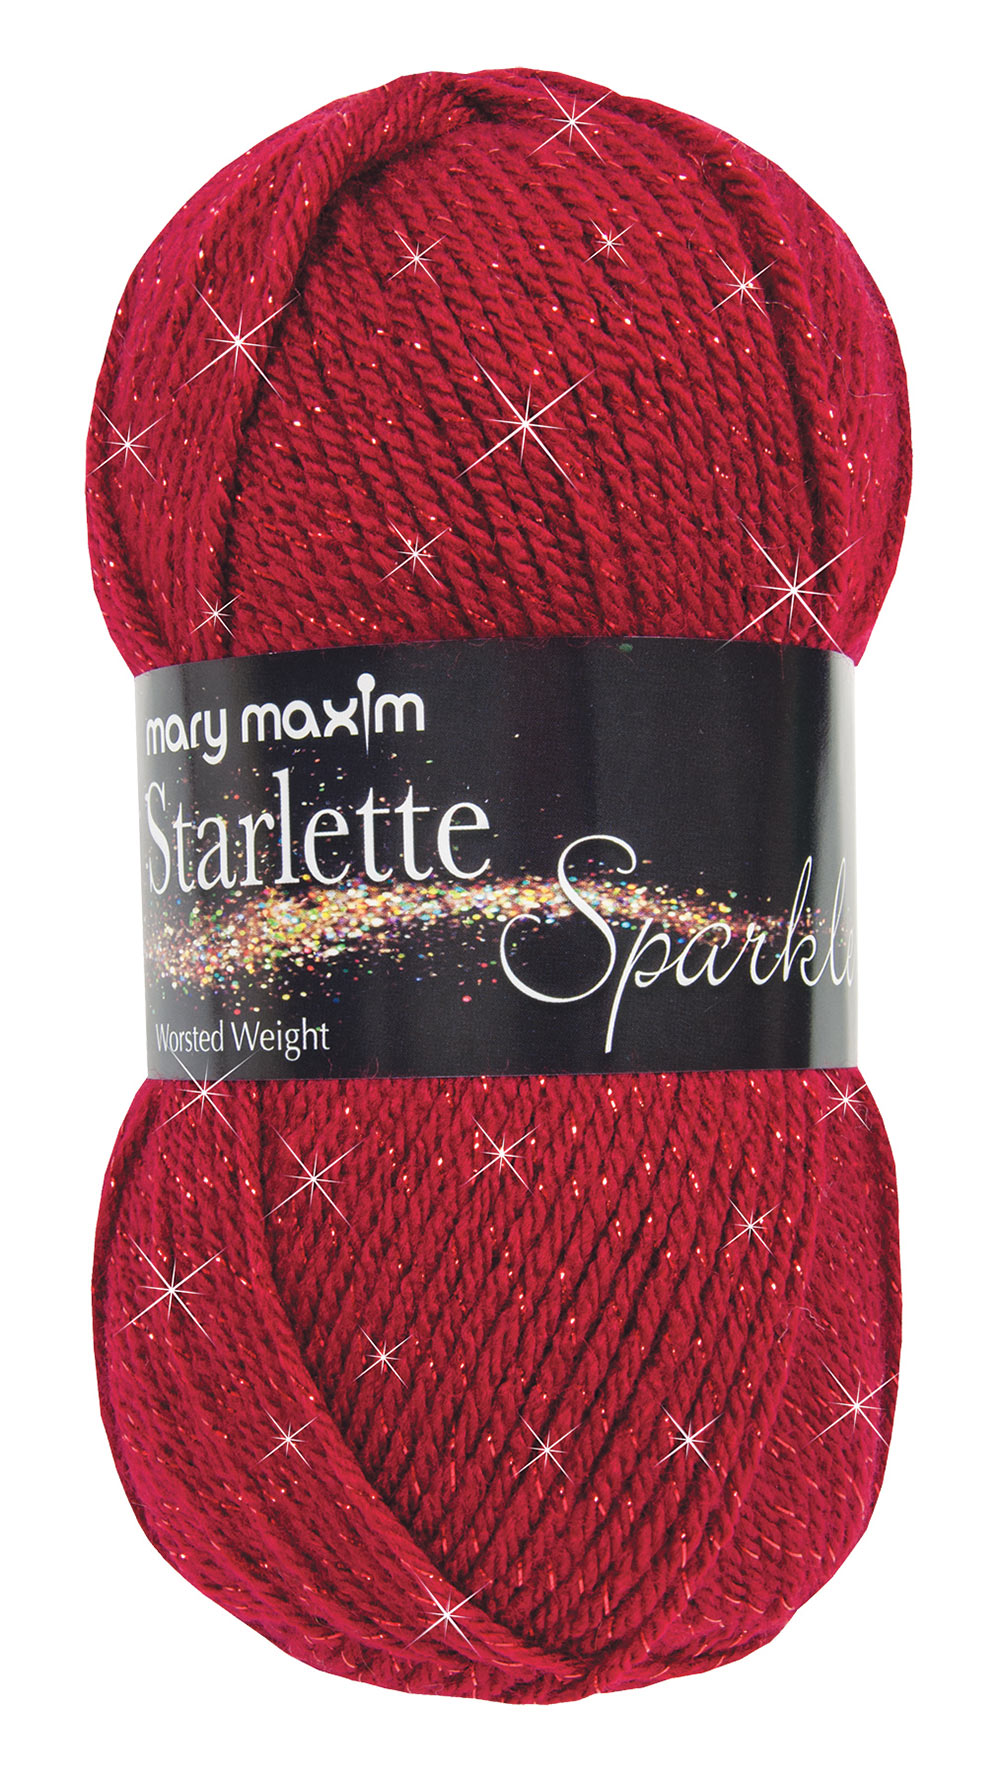 Mary Starlette – Mary Maxim Ltd